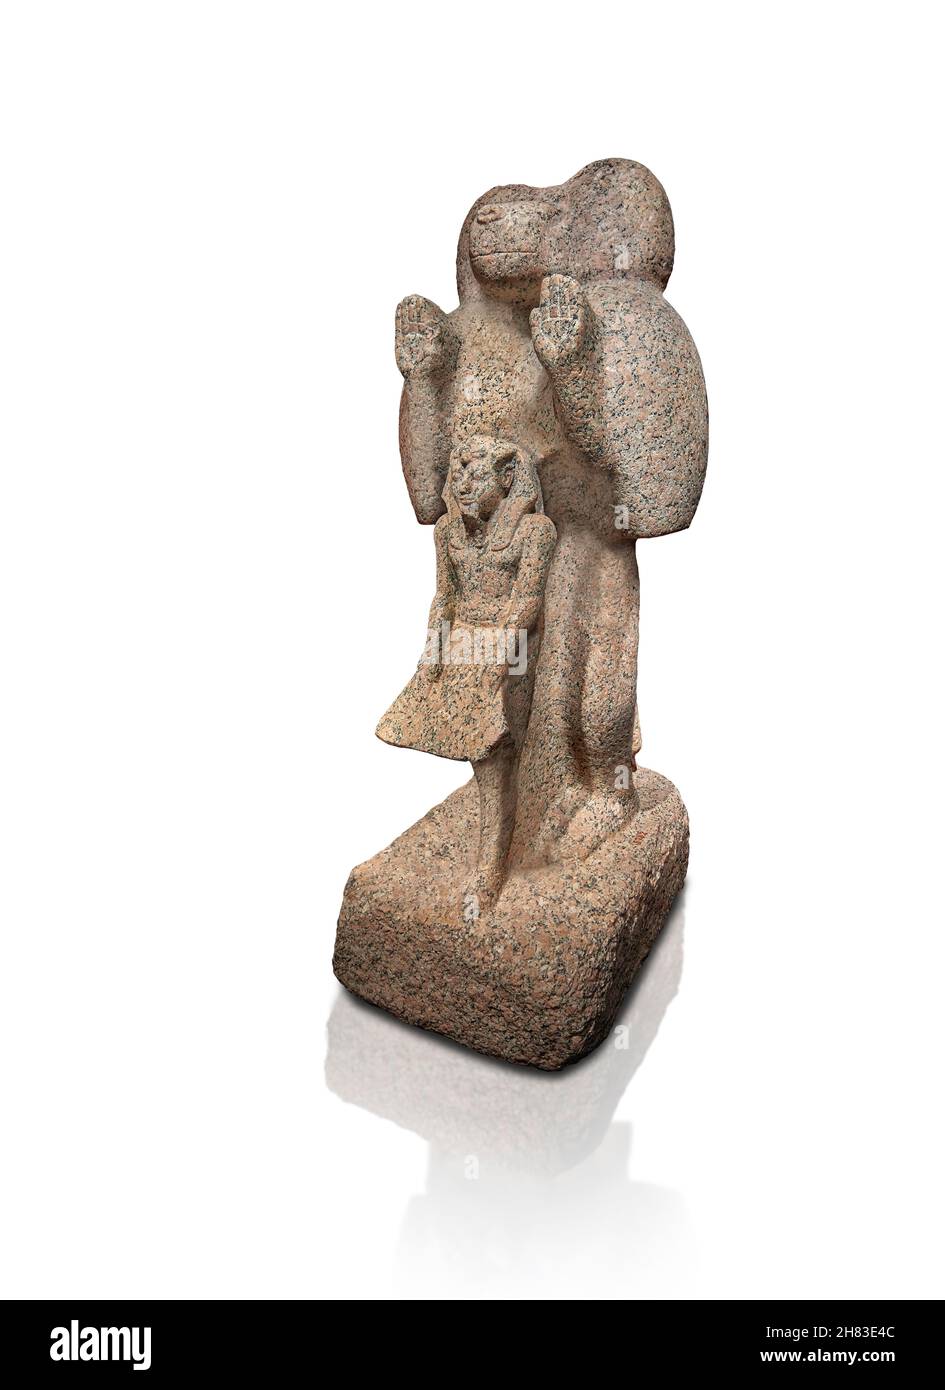 Altägyptische Statue eines Pavian und pharaos, 1549 bis 1292 v. Chr., 18th Dynastie, Kunsthistorisches Muesum Wien Inv. AS 5782. Granit, Höhe 130cm. Stockfoto